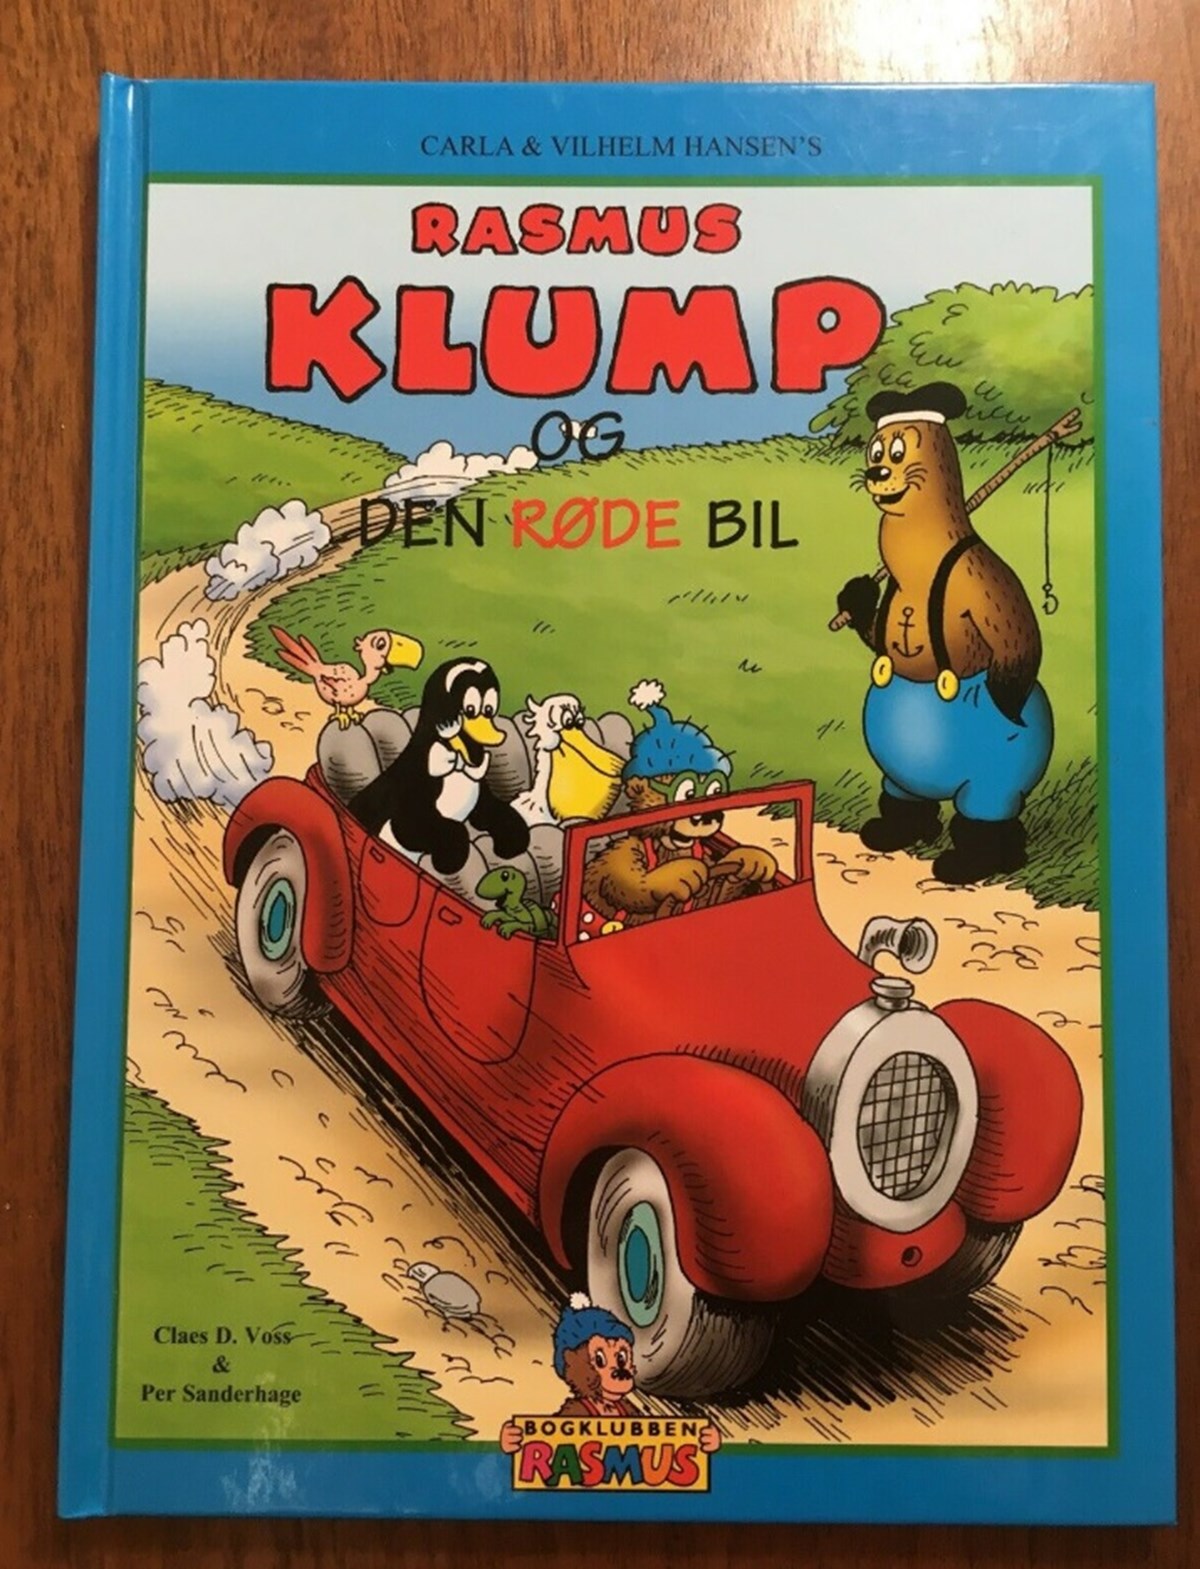 30 kroner skal du ofre for, at denne nostalgiske Rasmus Klump-bog kan blive din. Det er Signe fra Næstved, der skal have pengene, for hun er DBA-sælgeren af denne børnebog